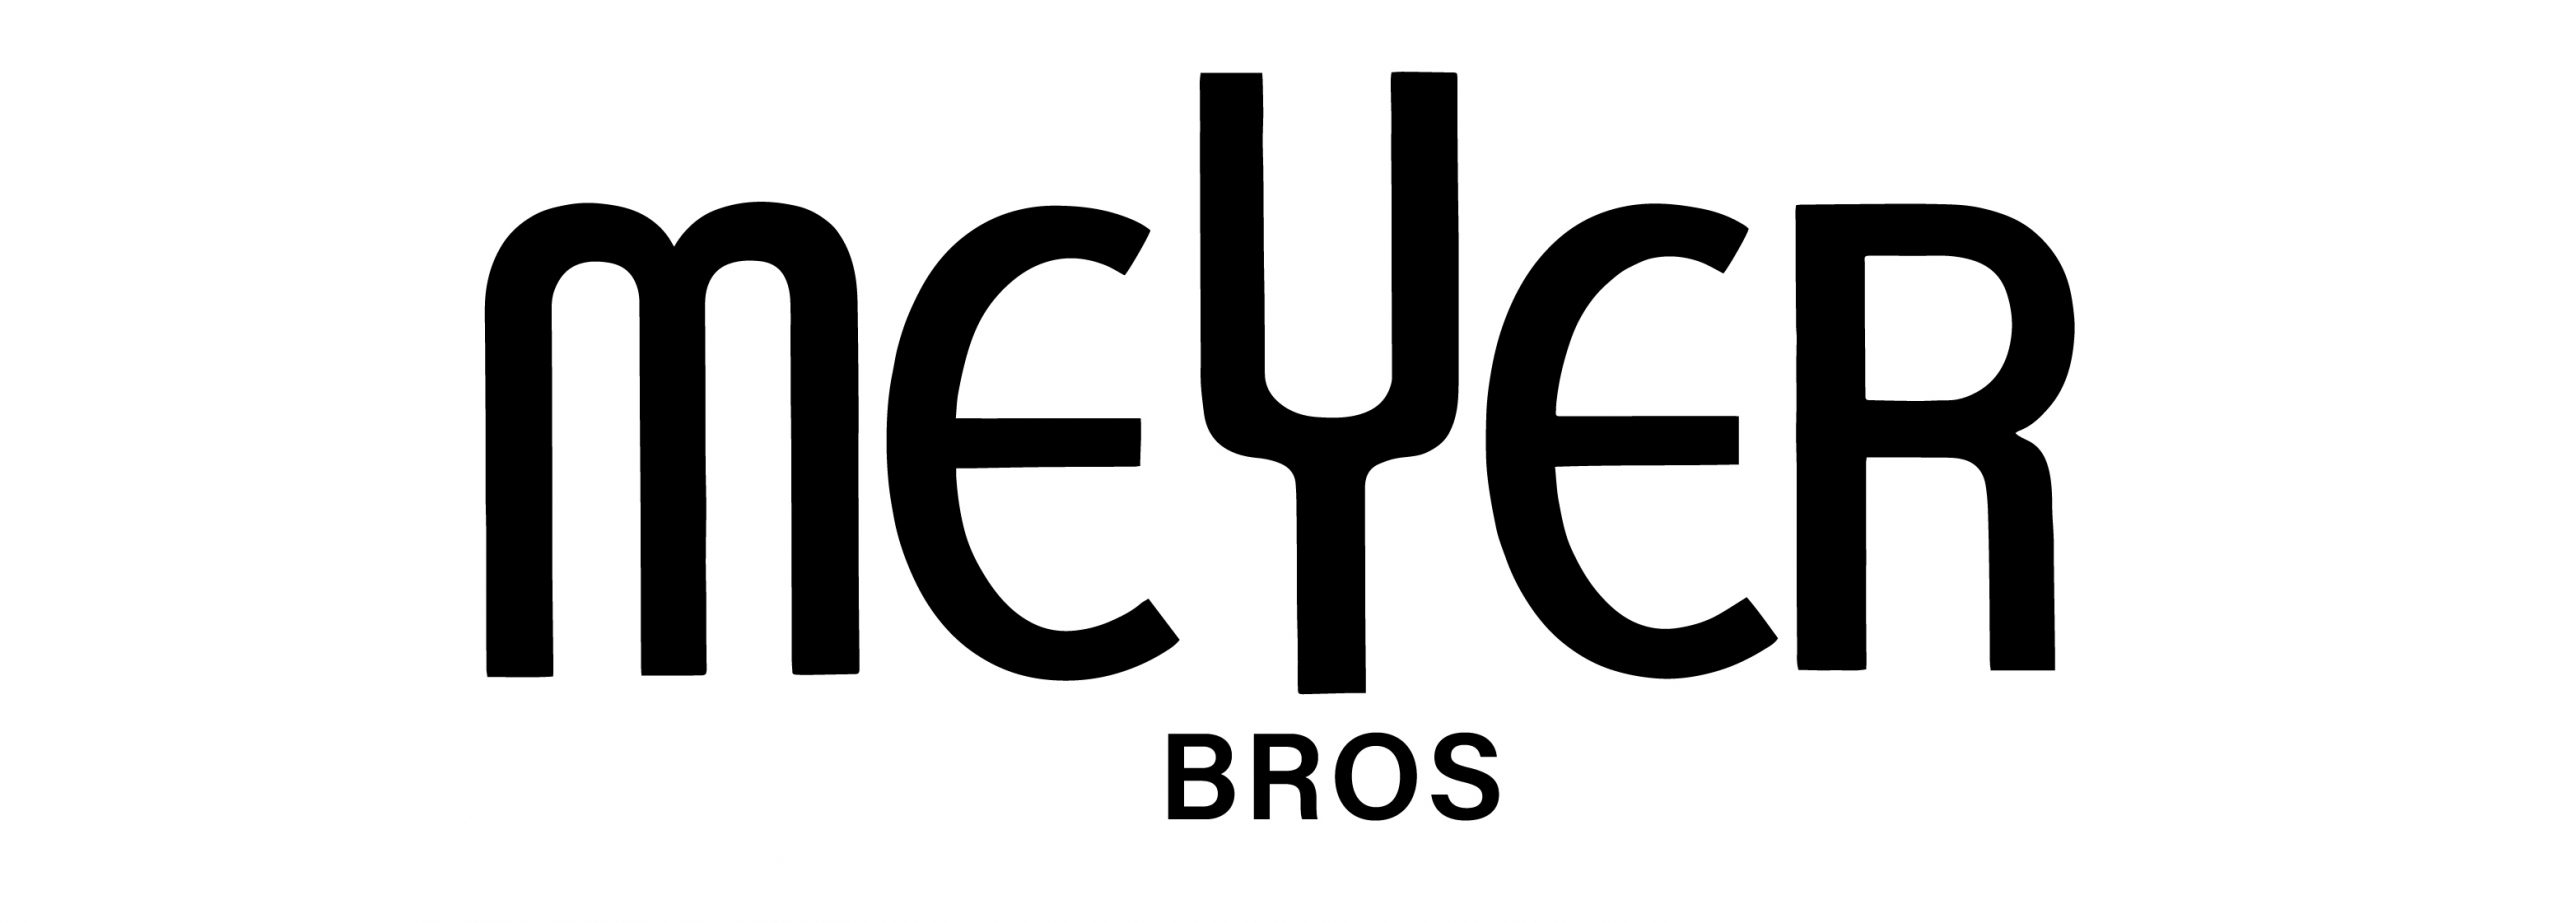 Meyer Bros